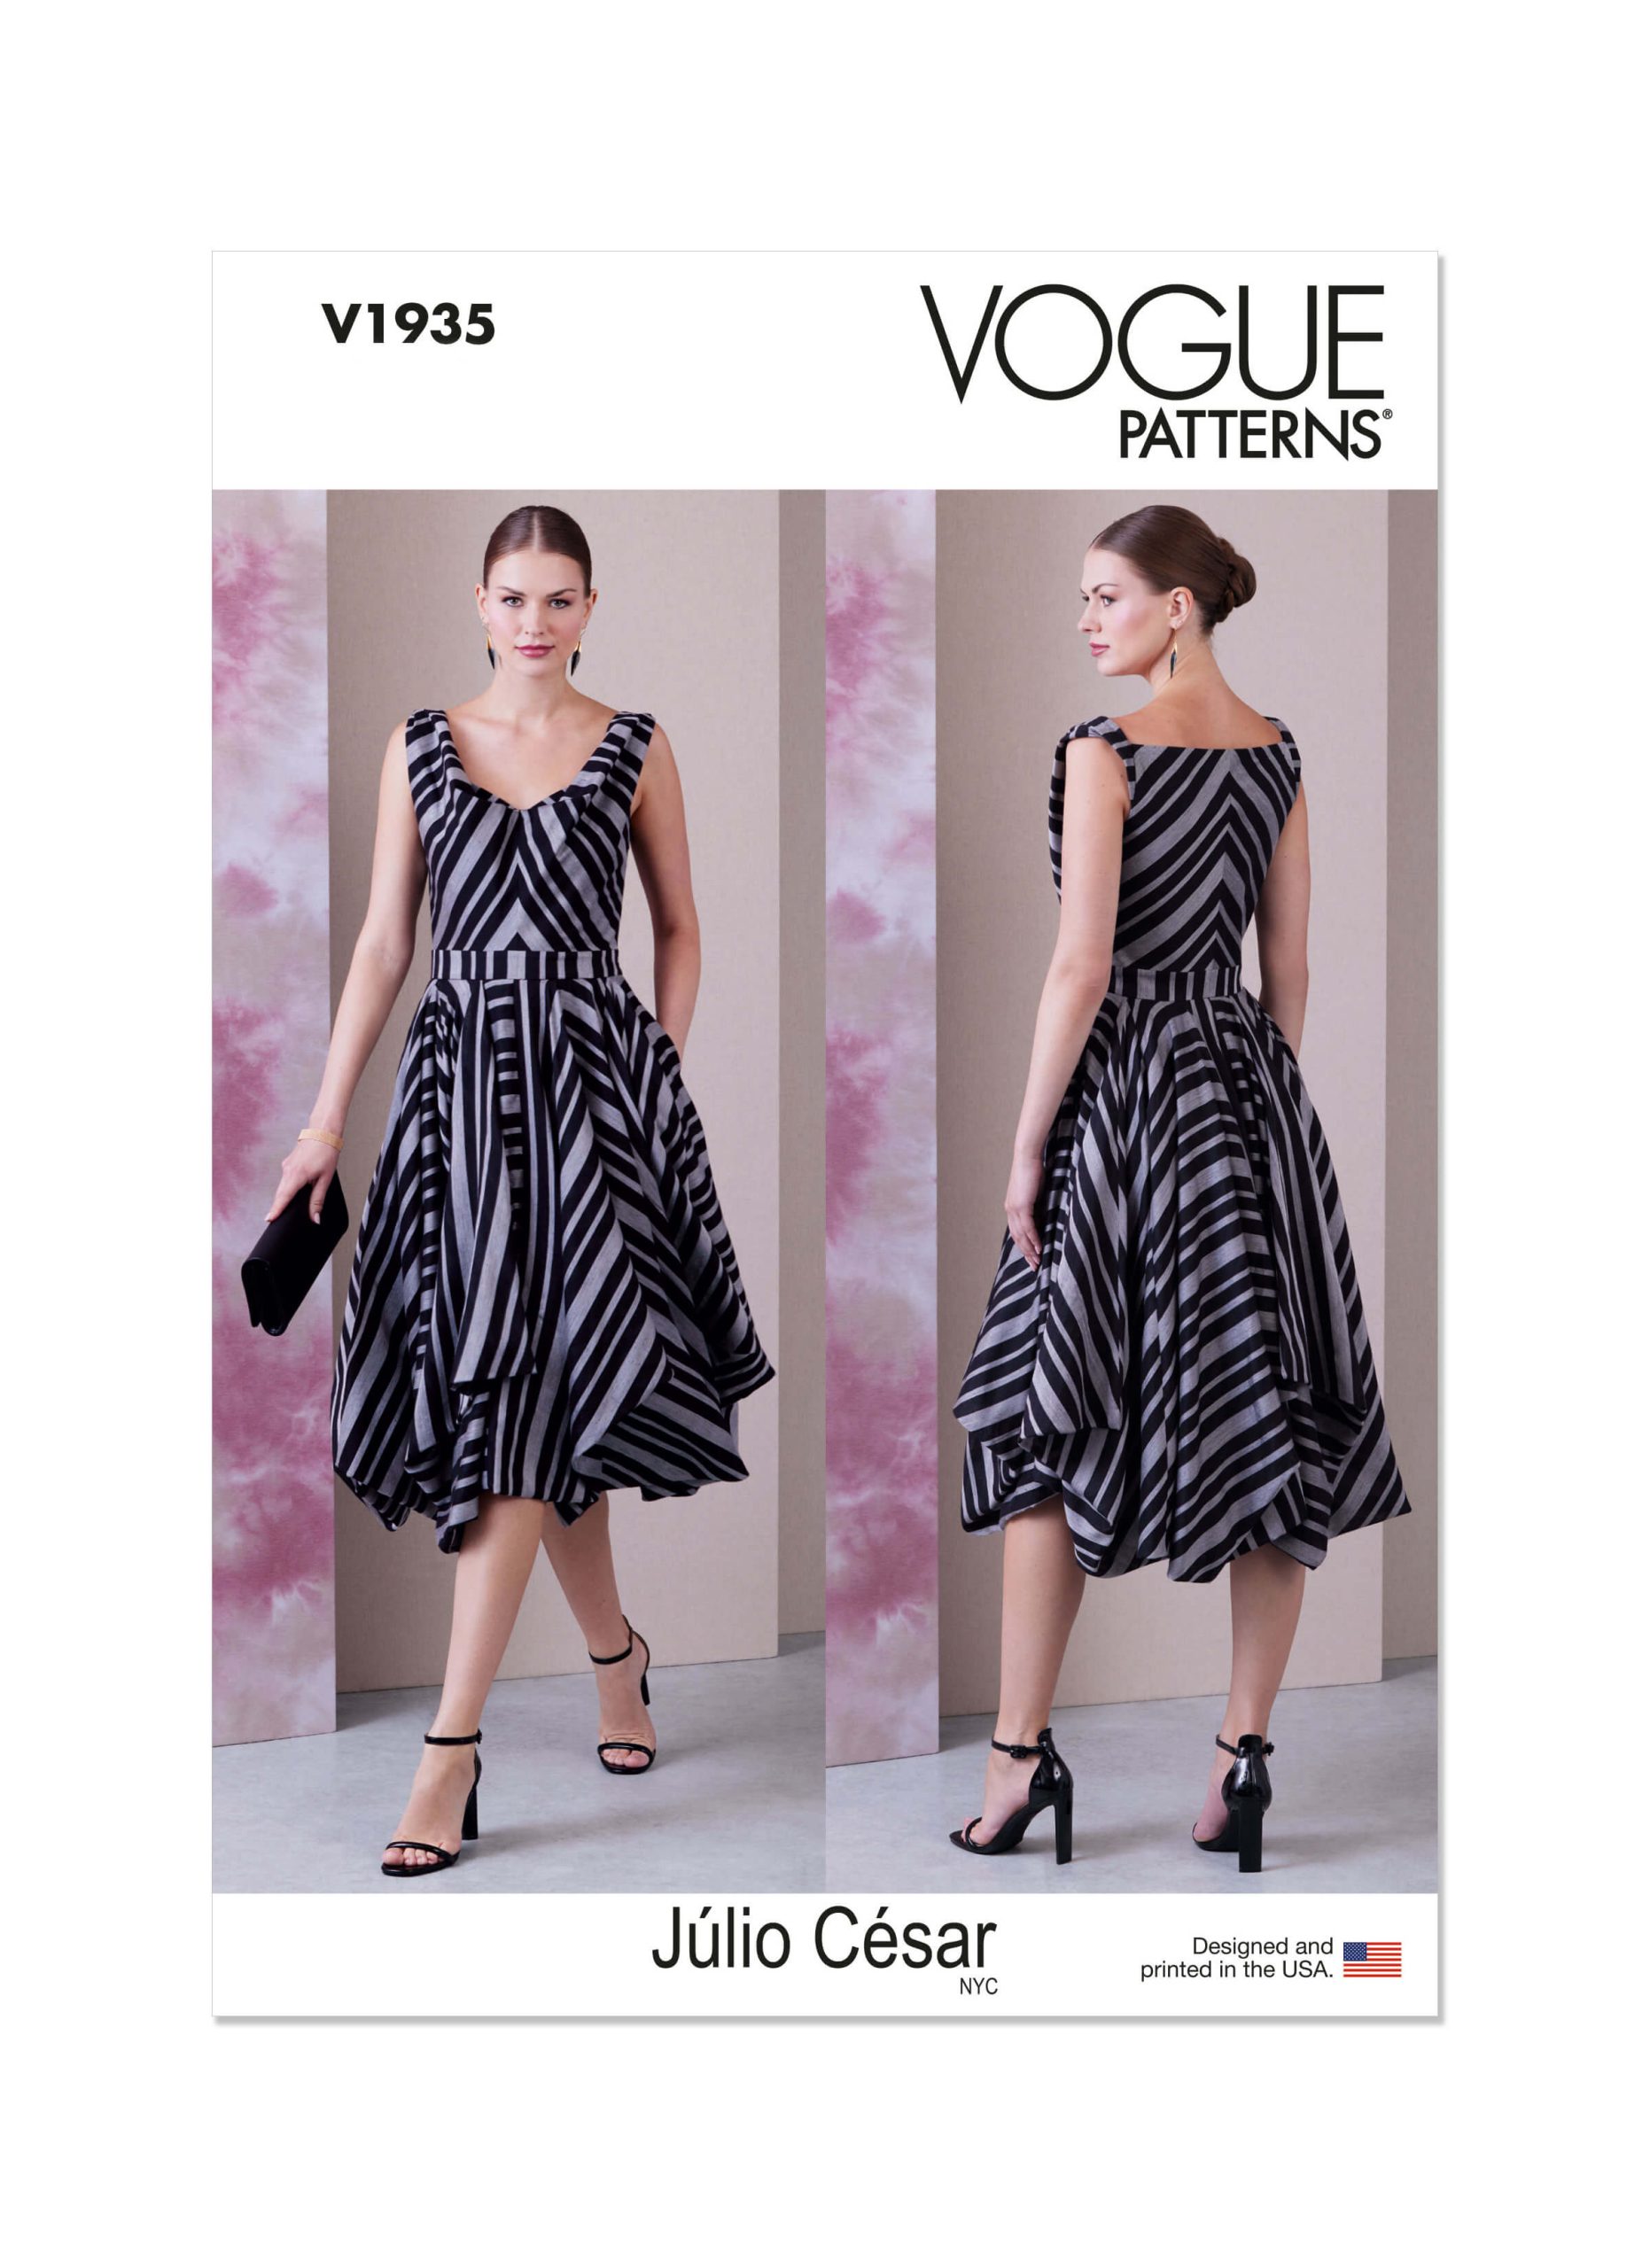 Vogue Patterns V1935 Misses' Dress by Julio Cesar